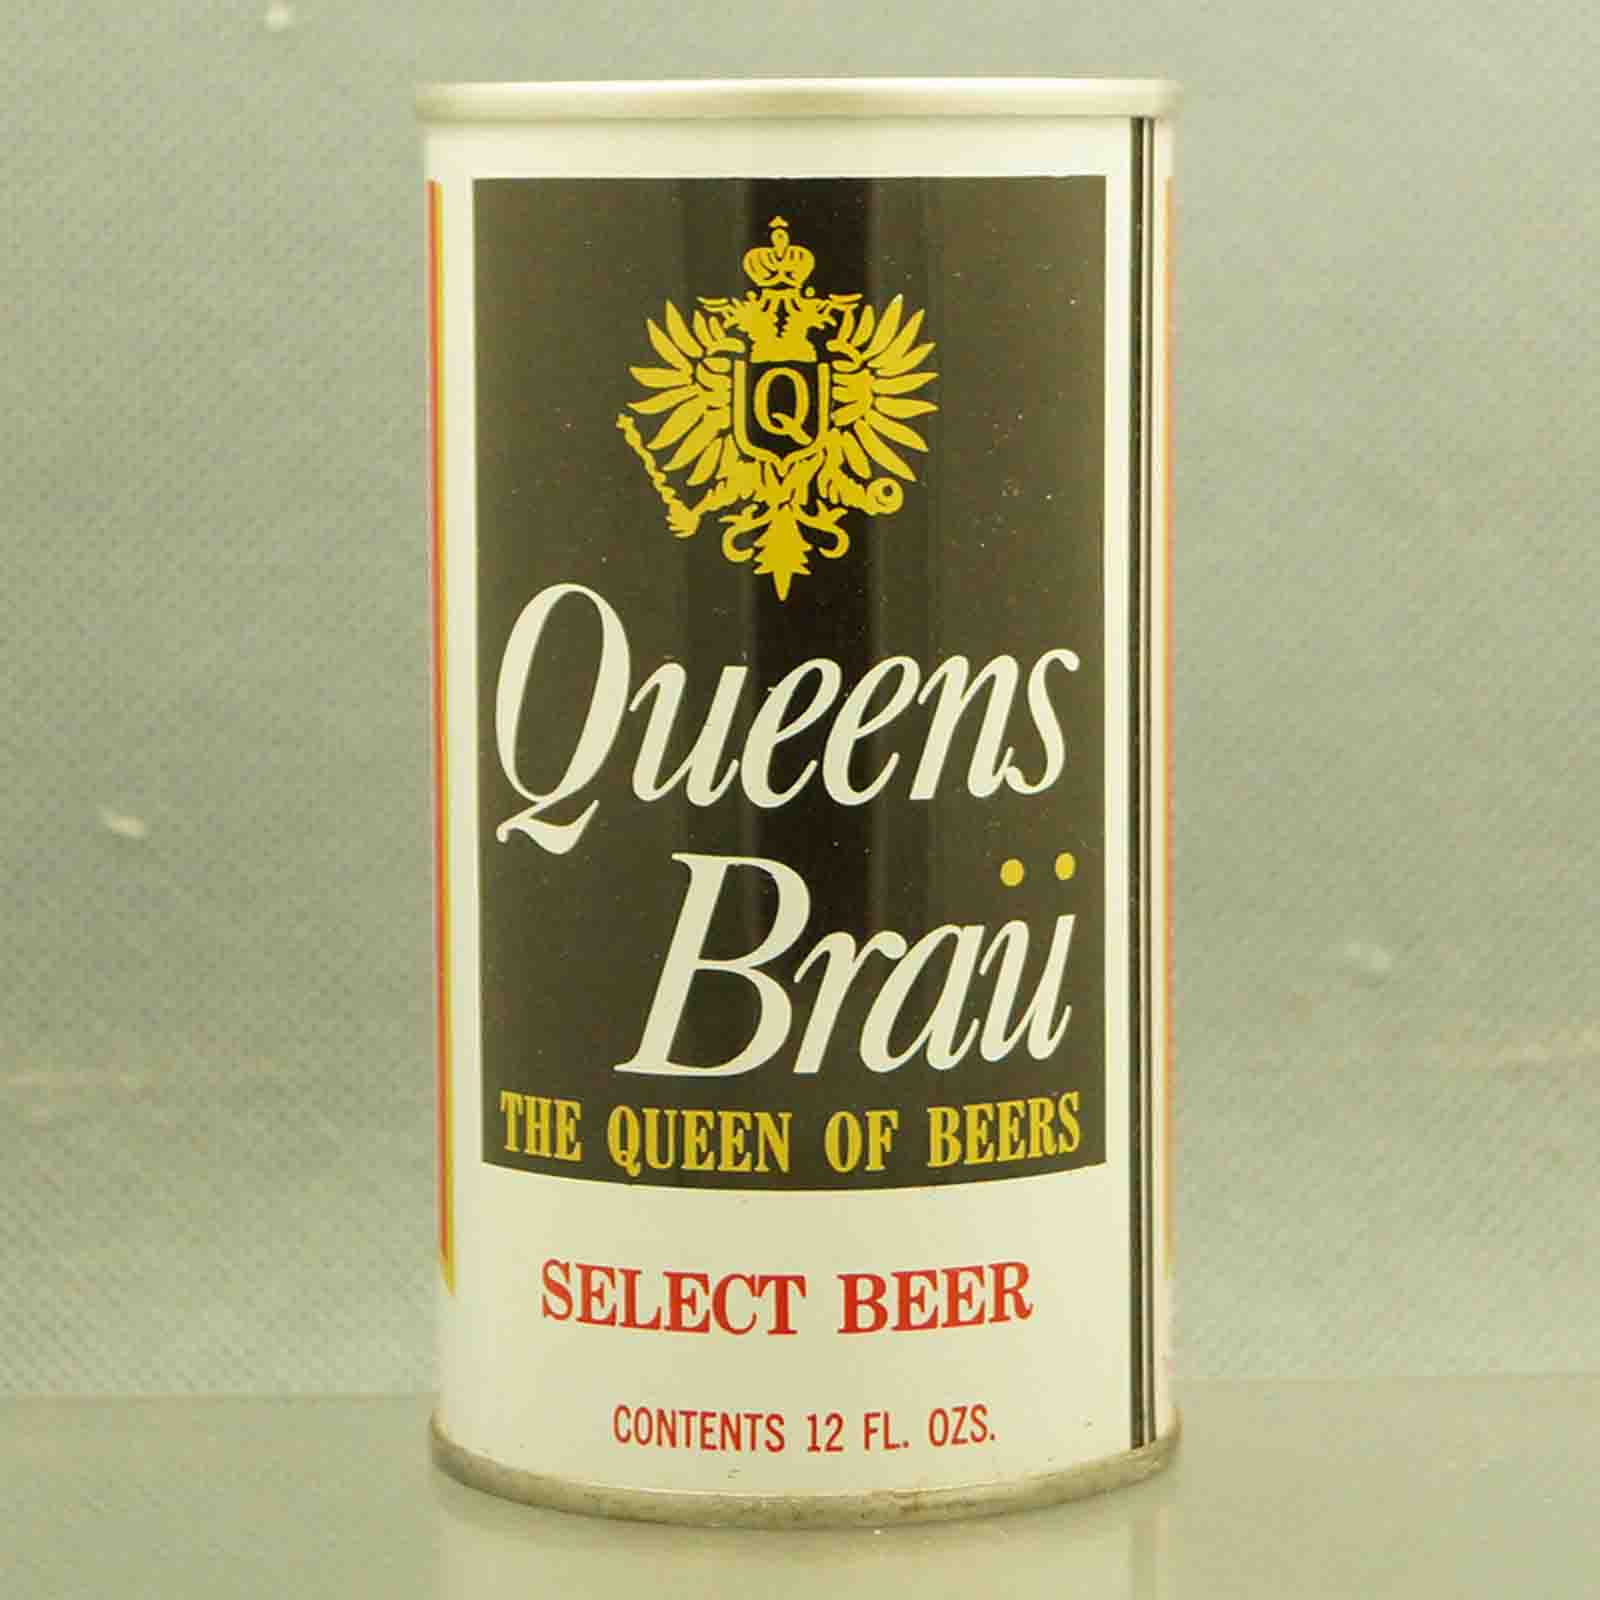 queensbrau 111-15 pull tab beer can 3